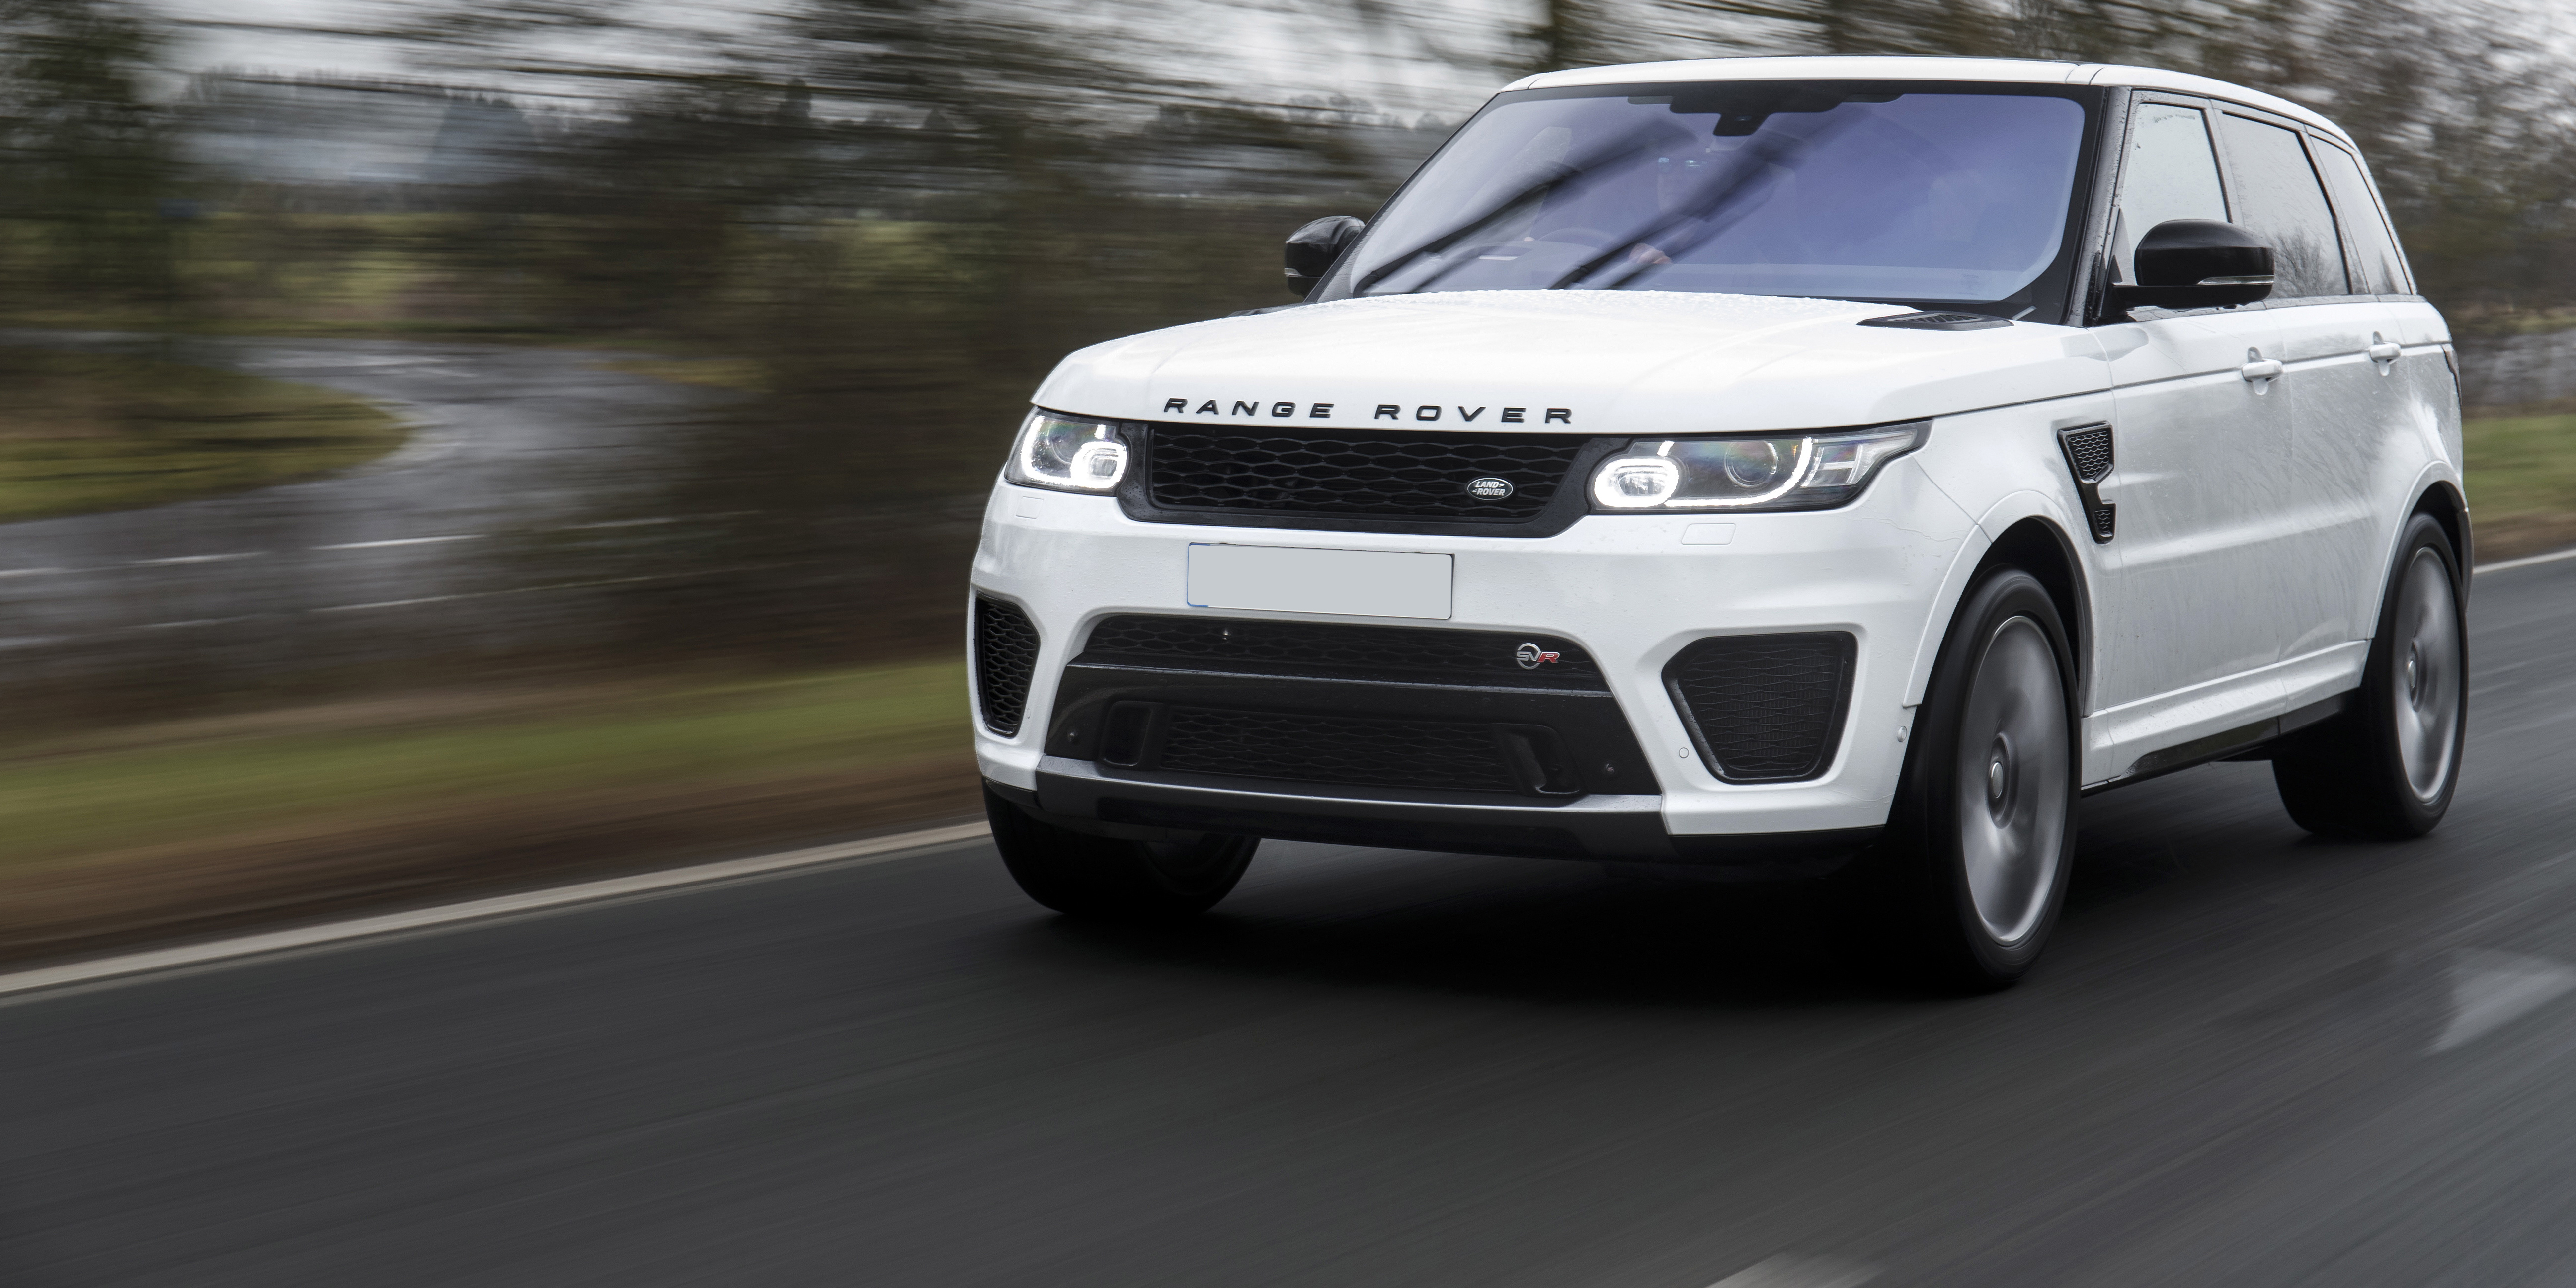 Für Land Rover Range Rover Sport Velar Evoque Discovery 3 4 5  Auto-Fußmatten Maß